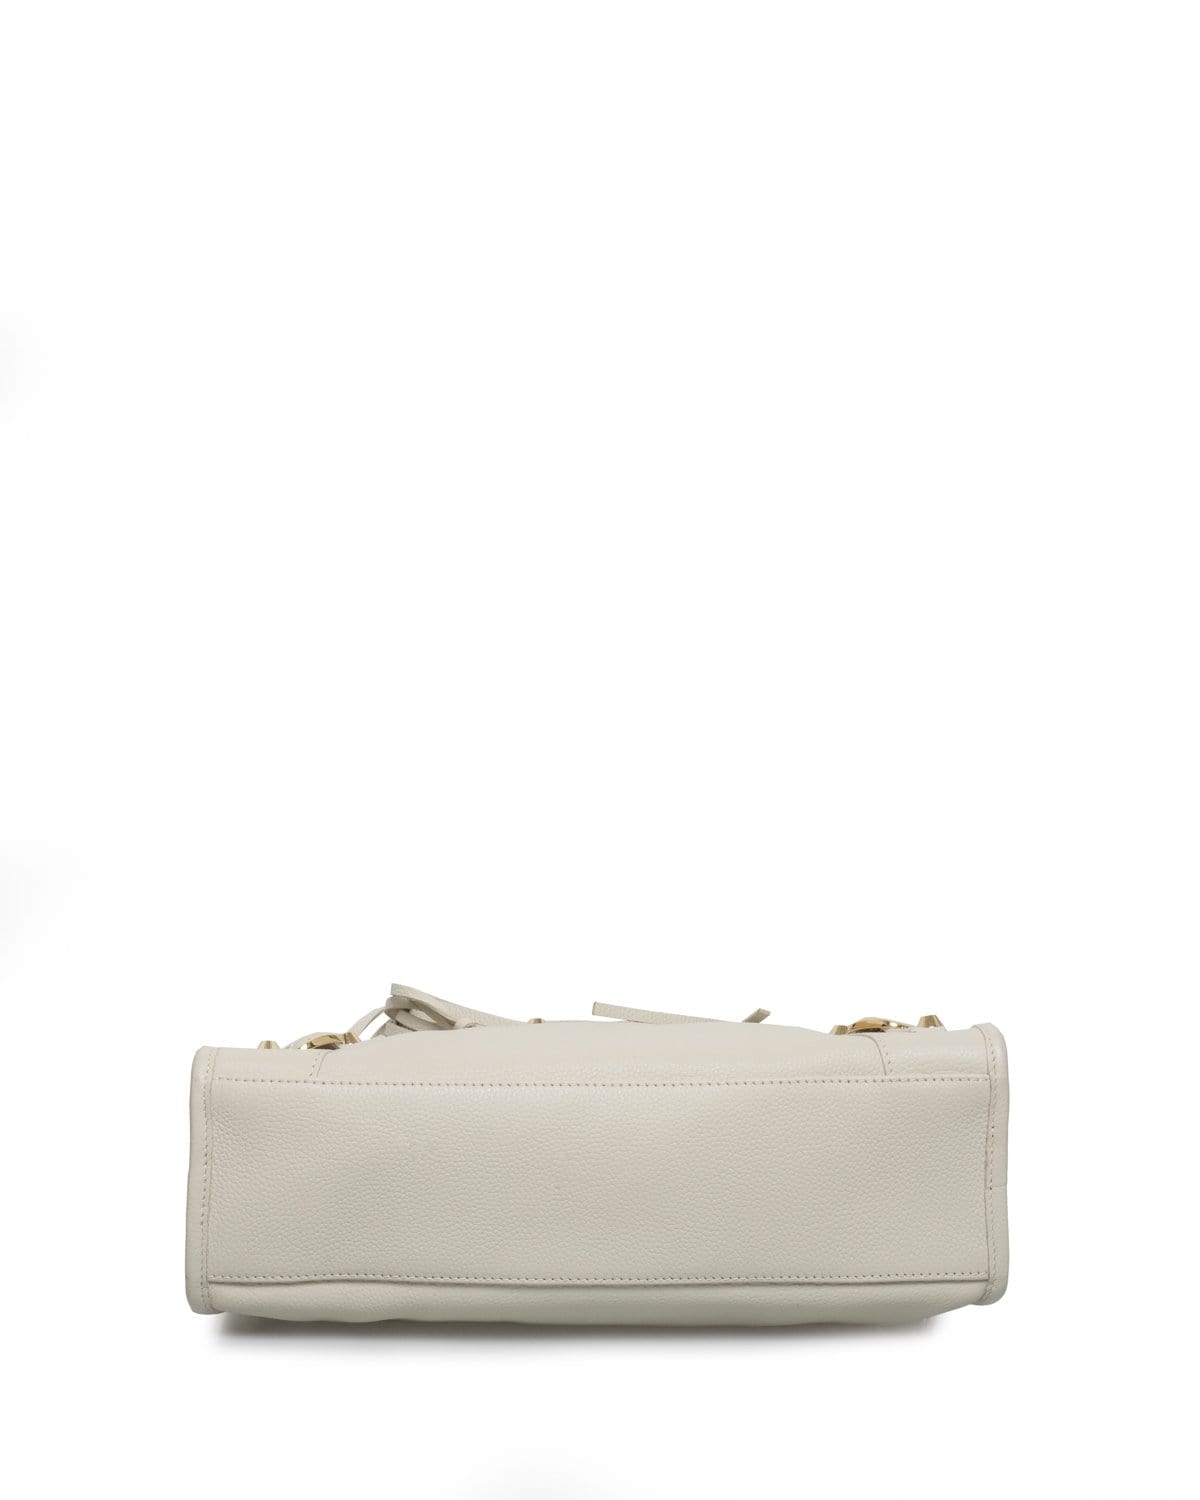 Balenciaga Balenciaga Small Cream Leather City Tote Bag GHW - AGL1408